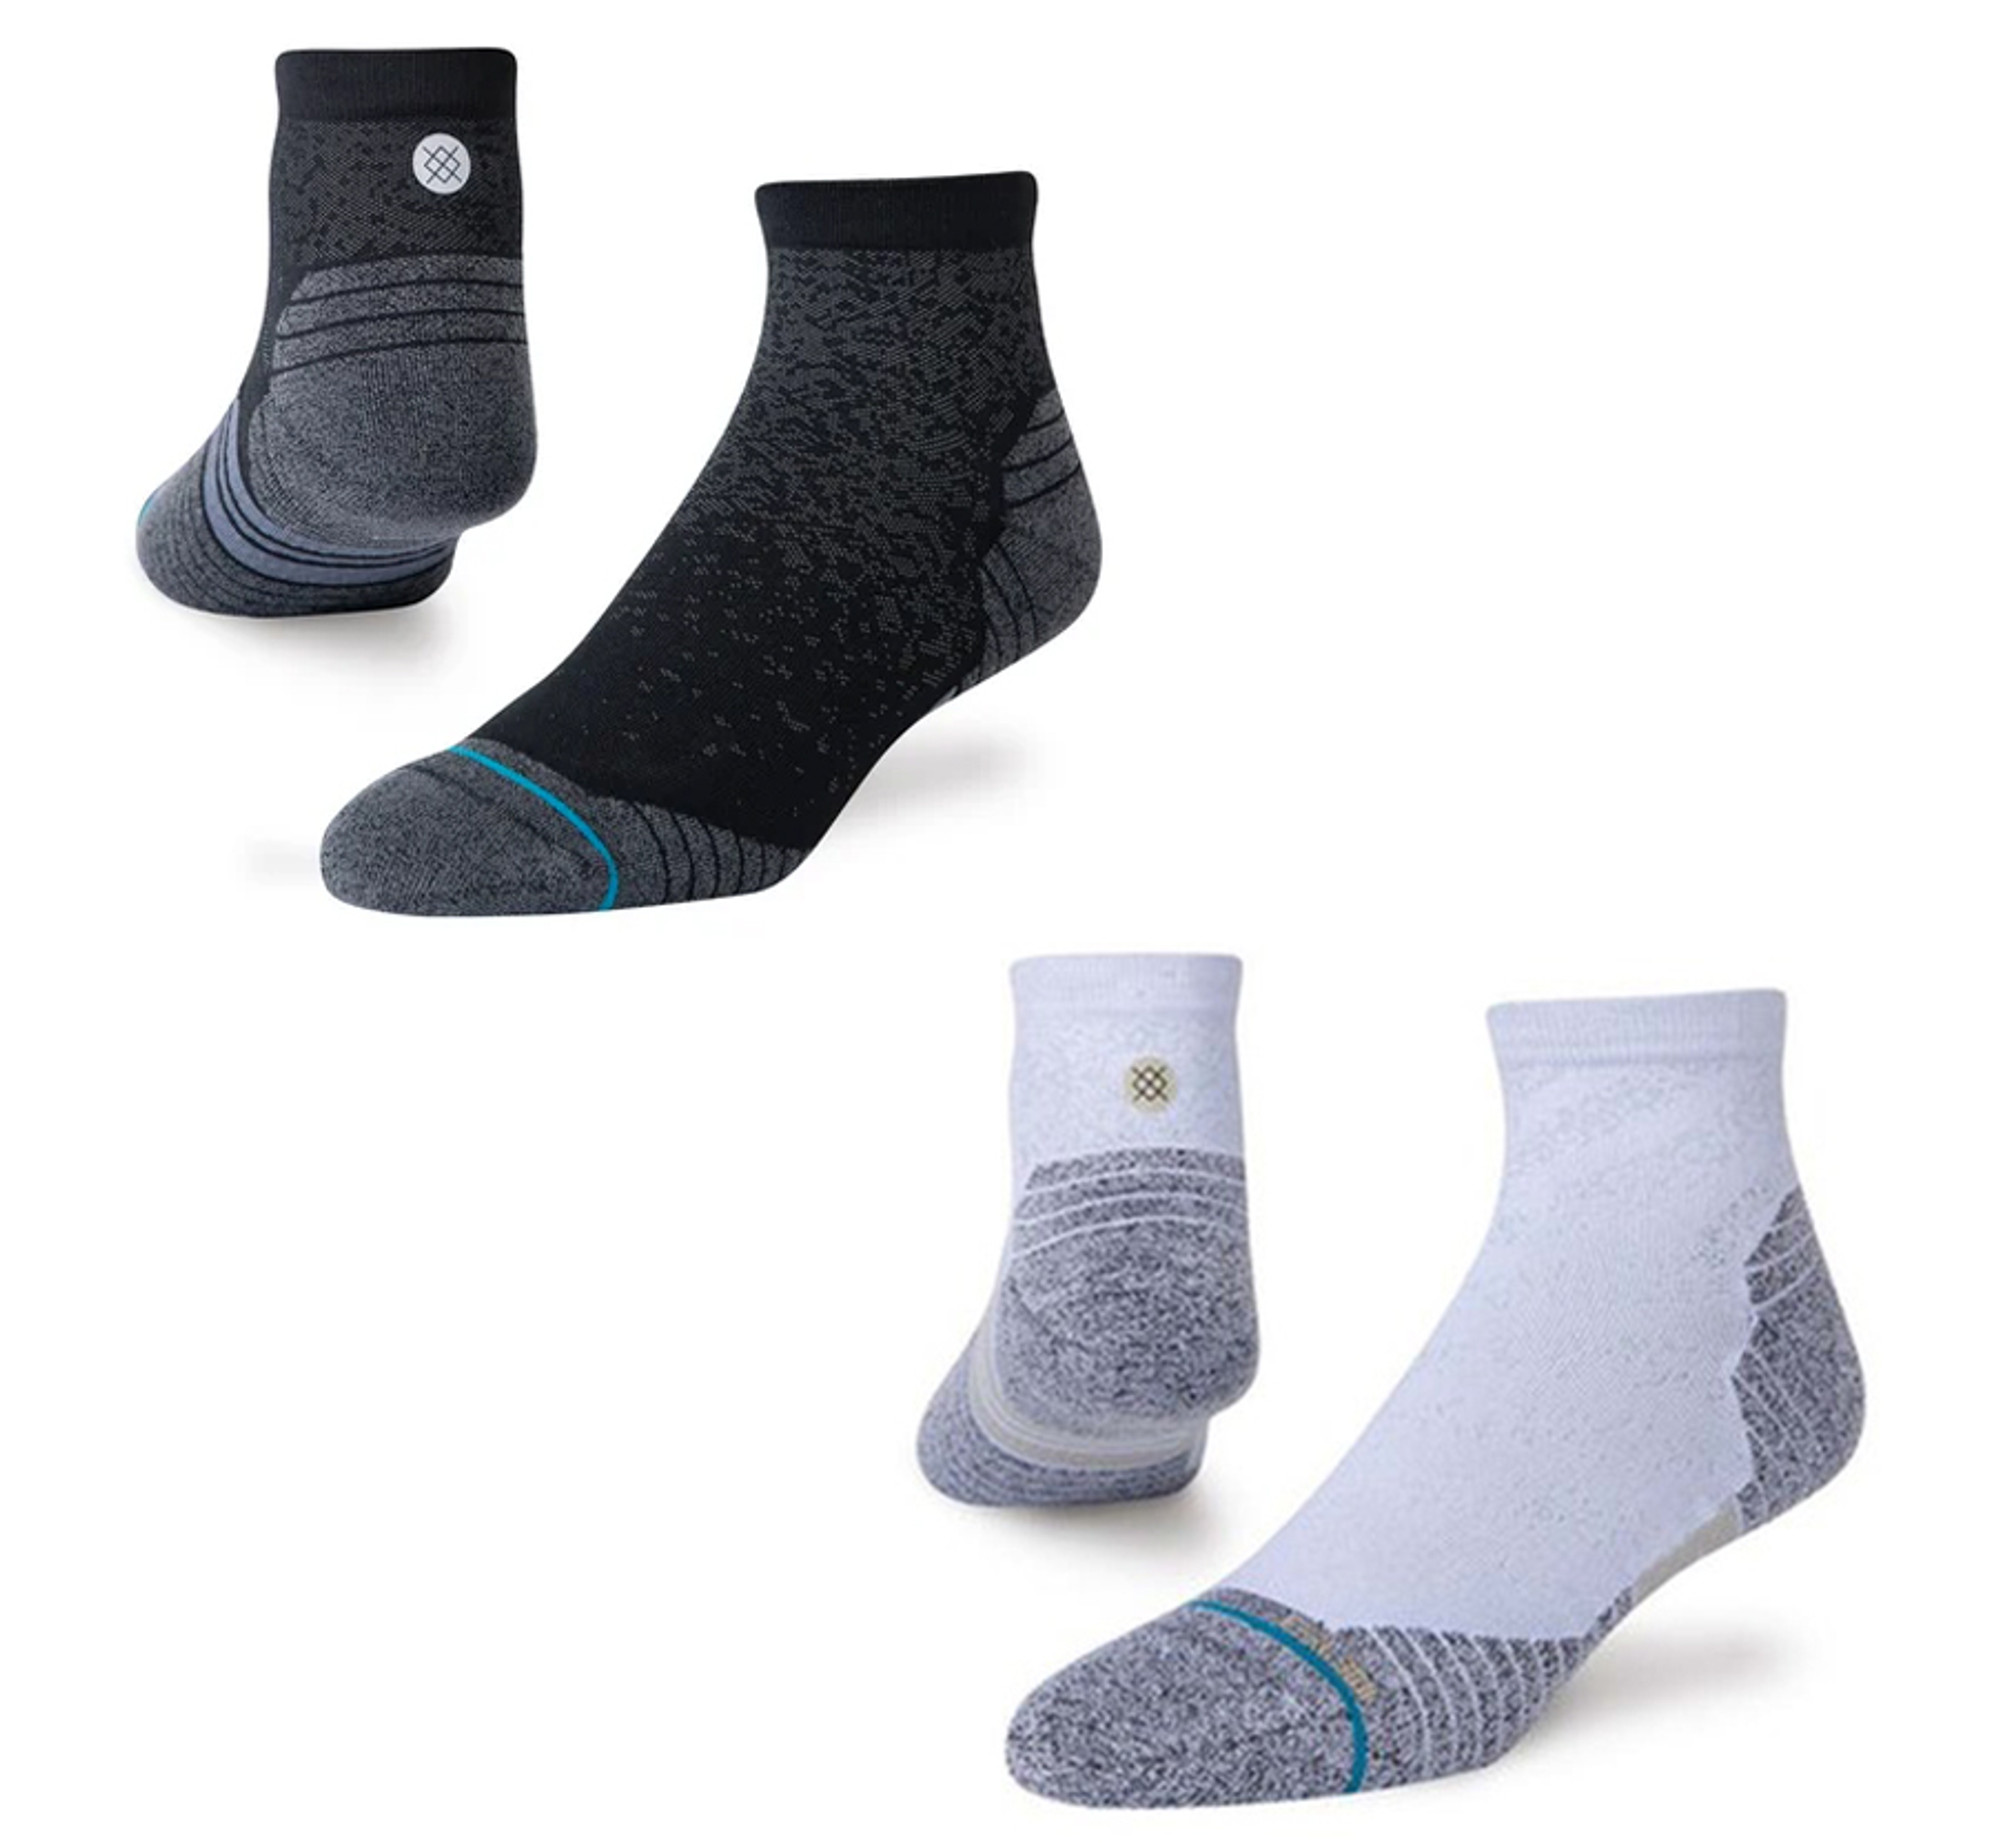 Stance Run Quarter Staple Sock | Shop online now at Sunlight Station